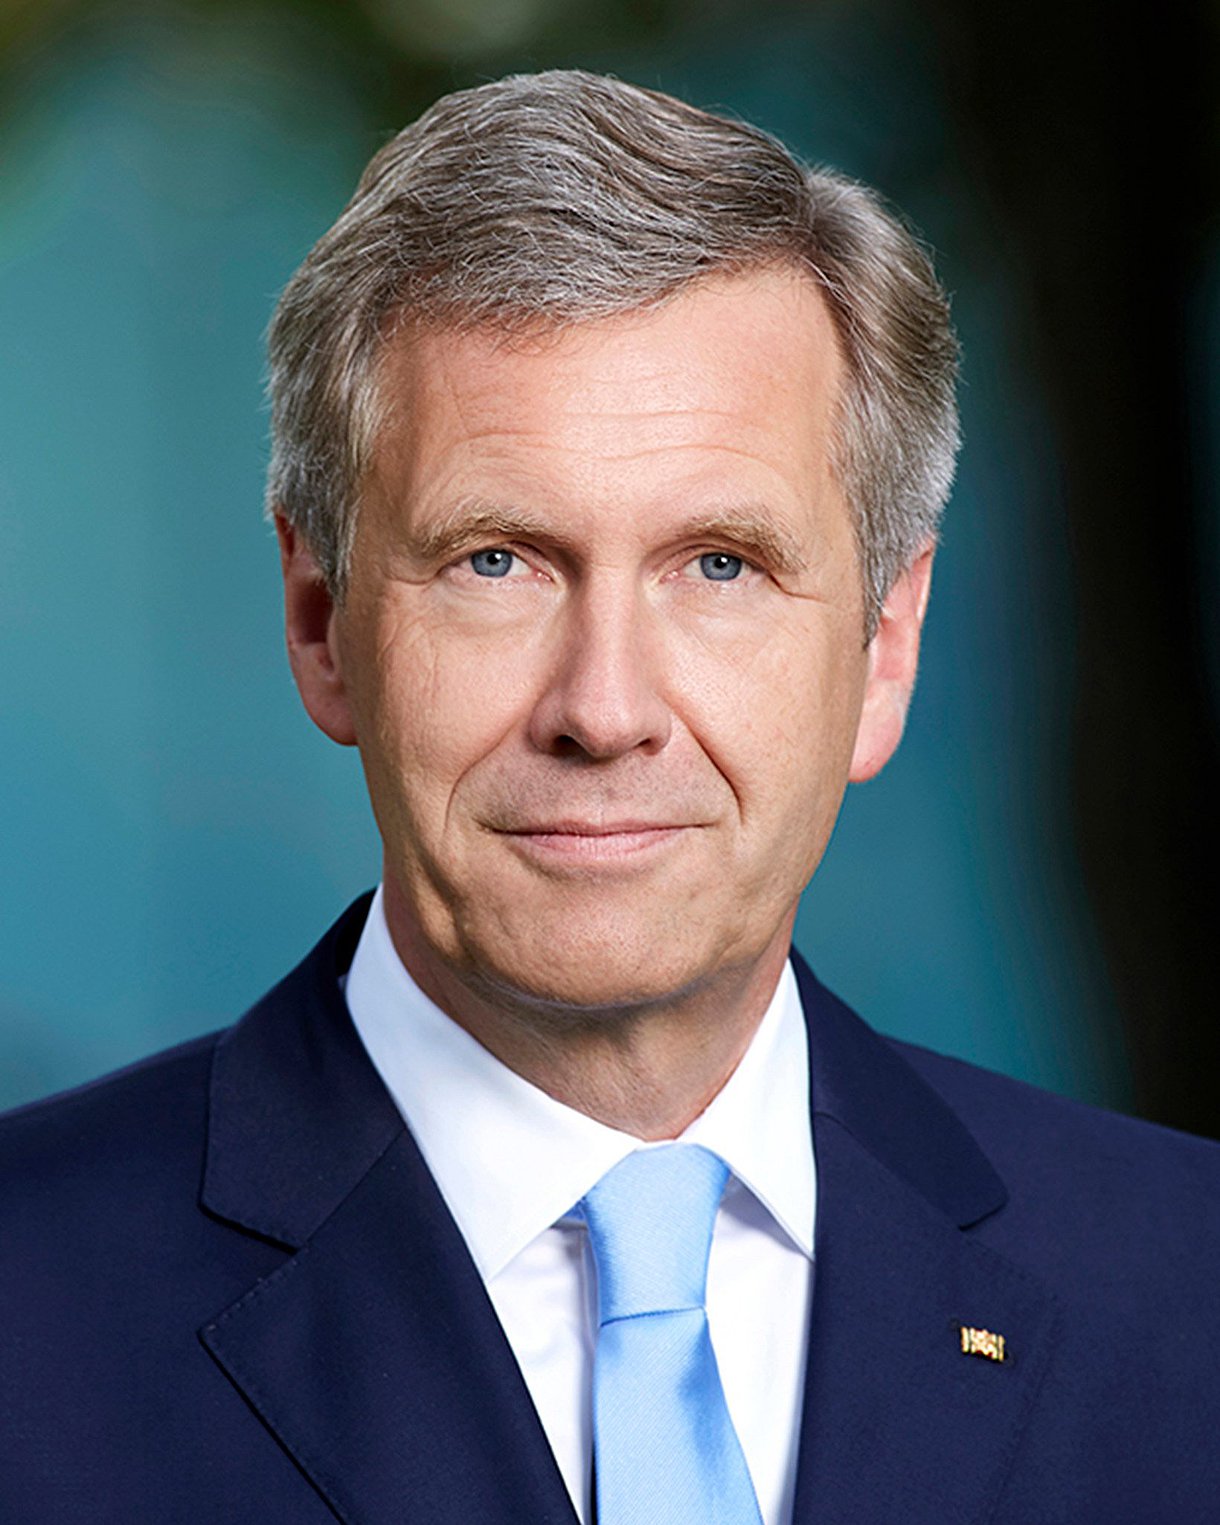 Foto: Porträtbild von Christian Wulff, Bundespräsident a. D. und Rechtsanwalt in Hamburg.